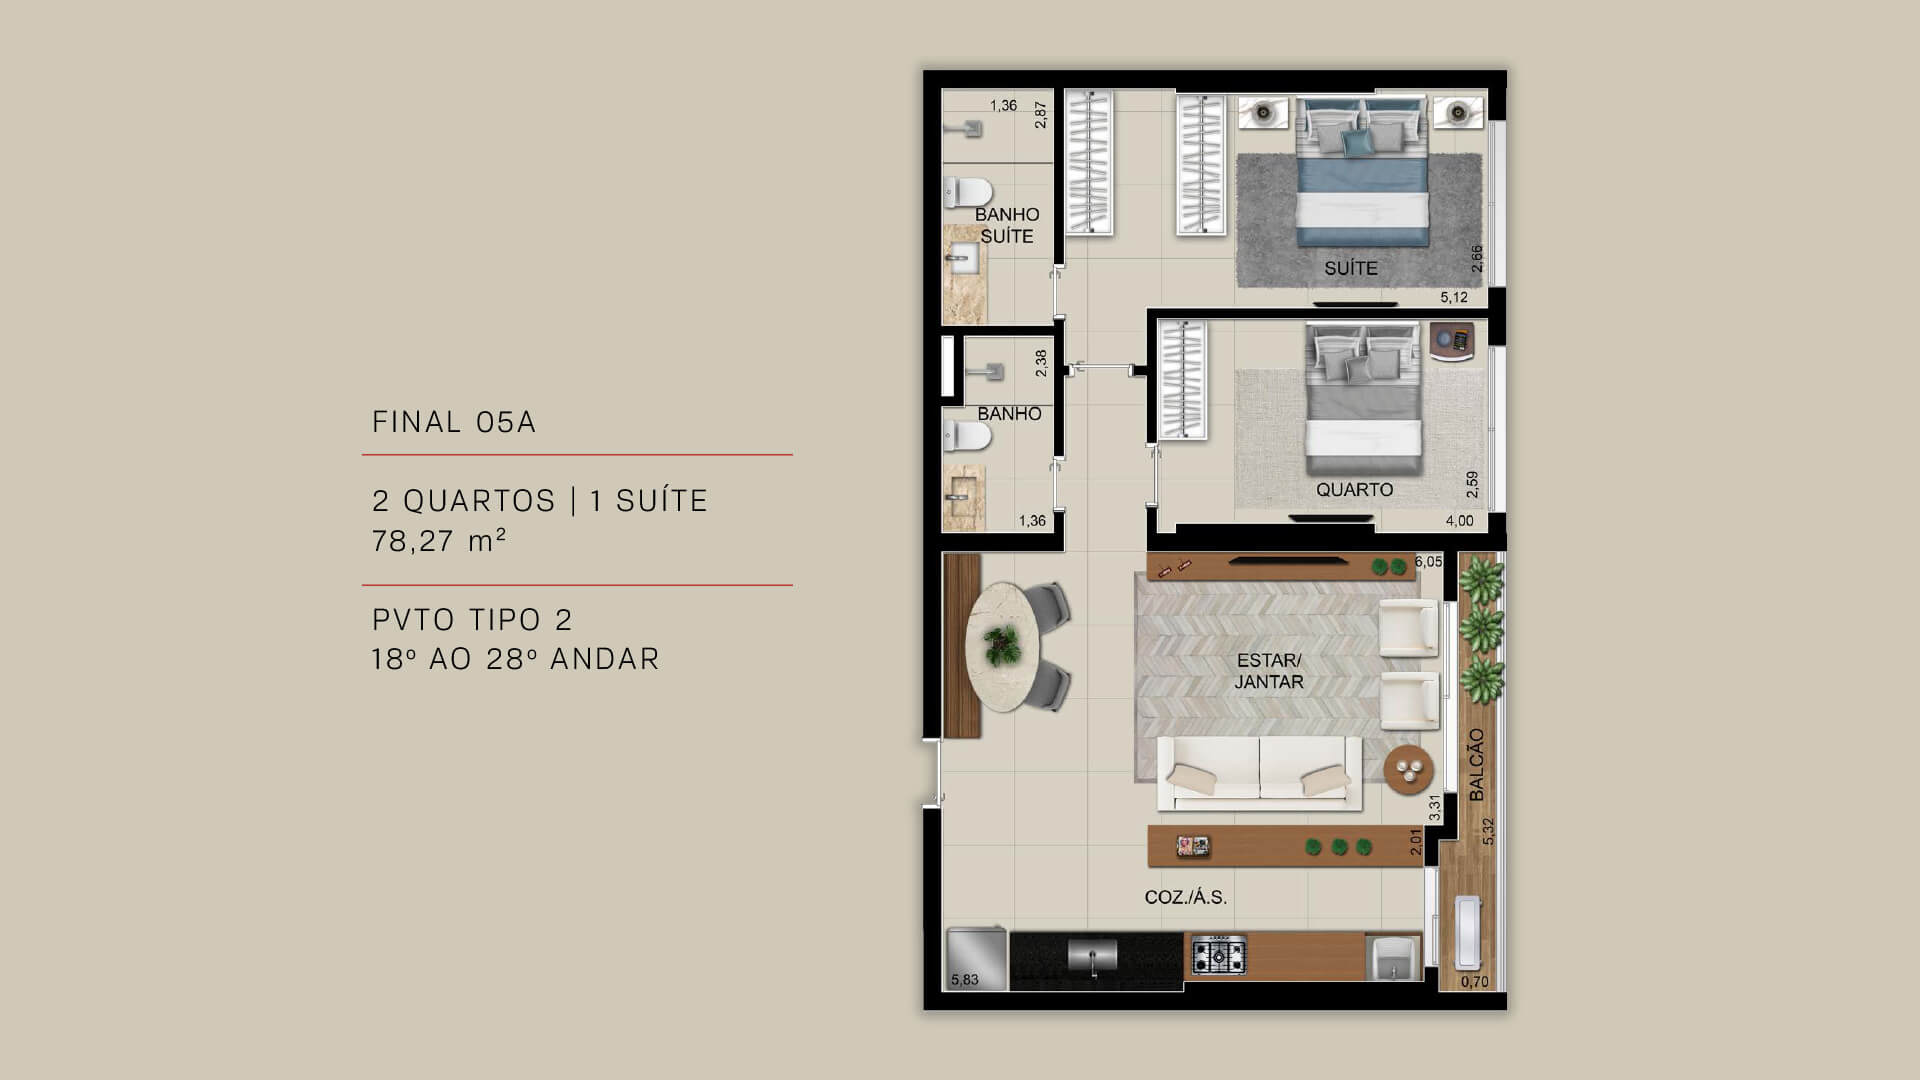 FINAL 05A - 2 QUARTOS | 1 SUÍTE 78,27 m²